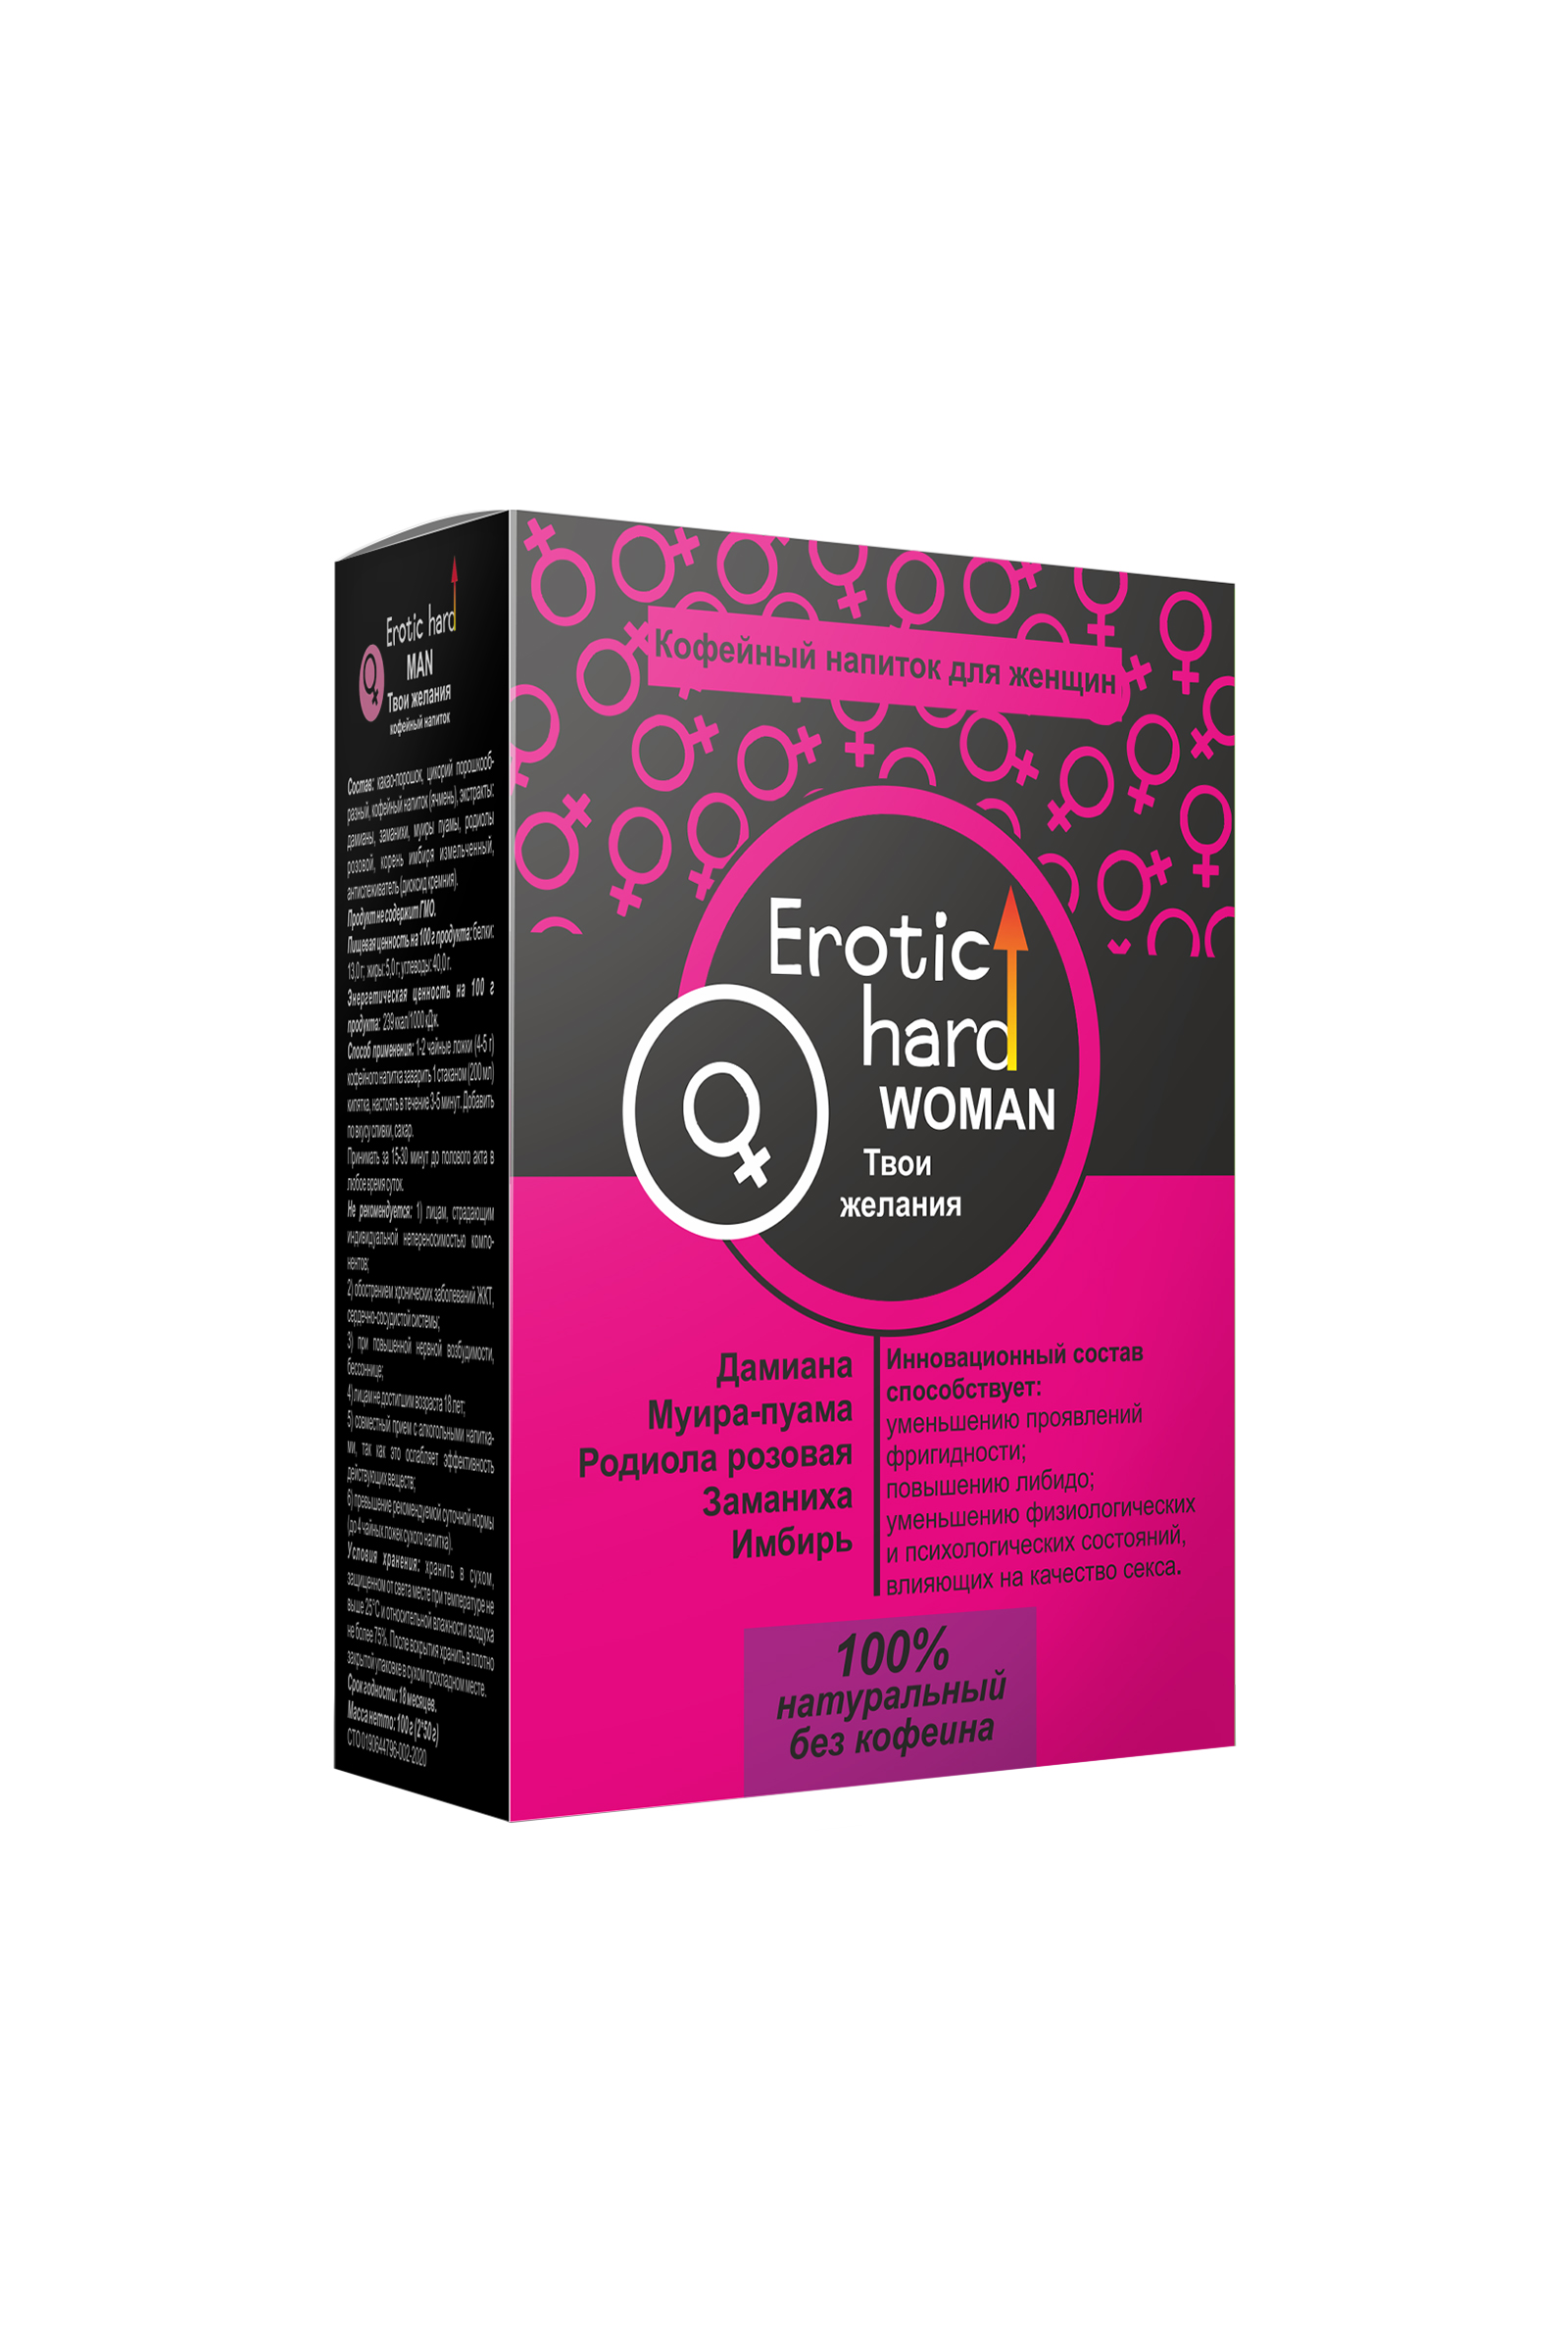 Кофейный напиток для женщин «Erotic hard» для повышения либидо и сексуальности, 100 гр